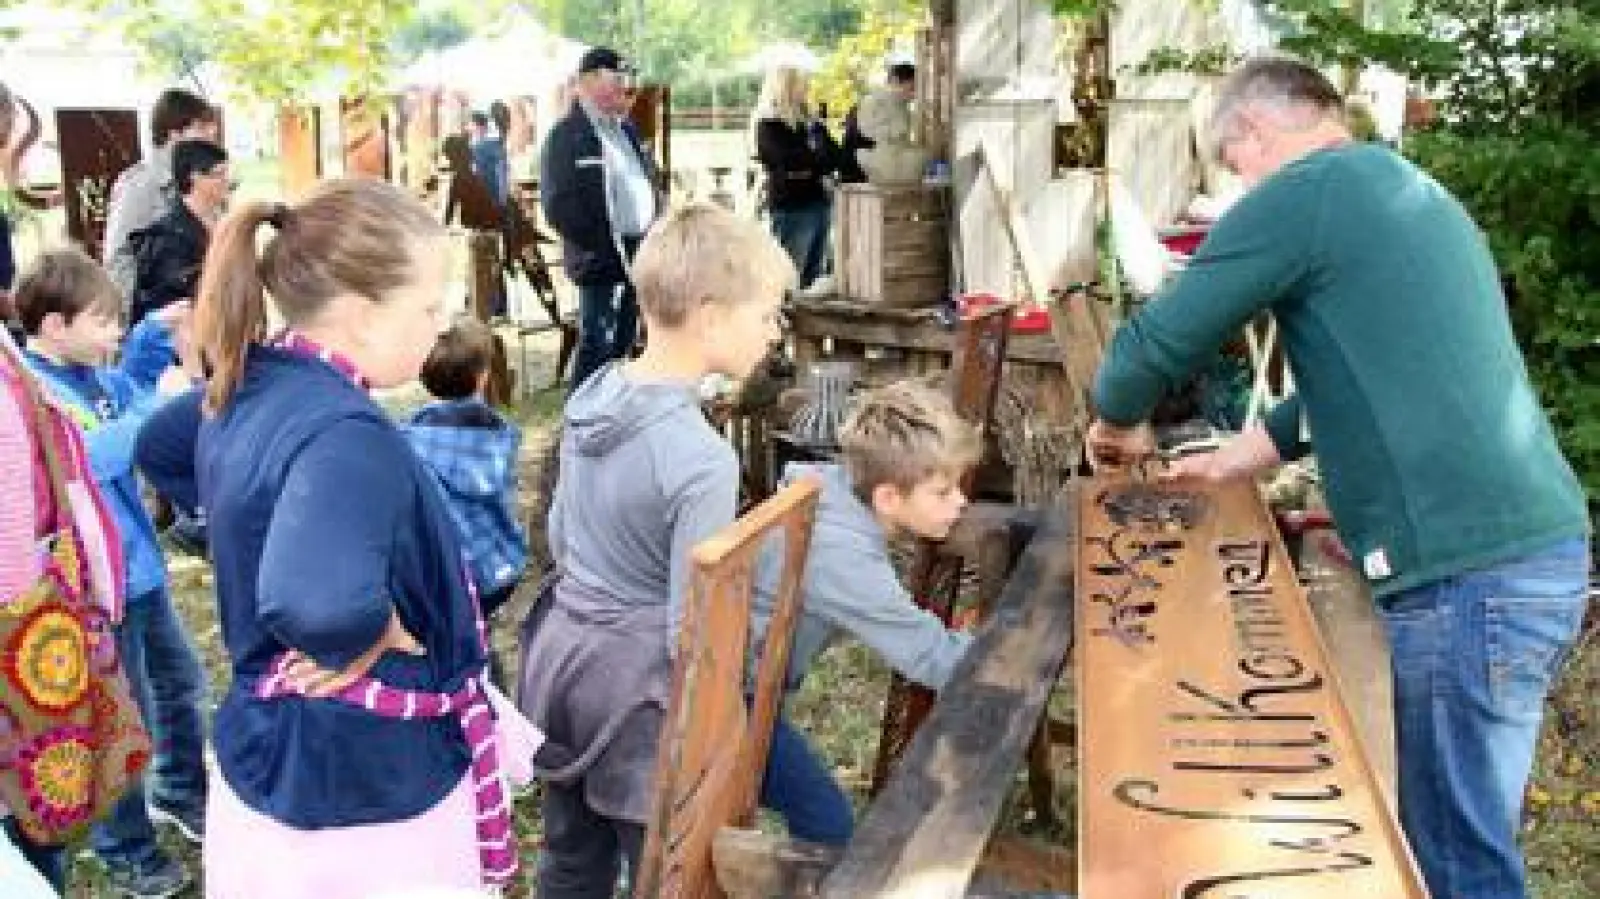 Kunsthandwerk zum Staunen und Mitwirken boten die Herbst- und Gartentage auf Schloss Scherneck.	Foto: Josef Abt (Foto: Josef Abt)